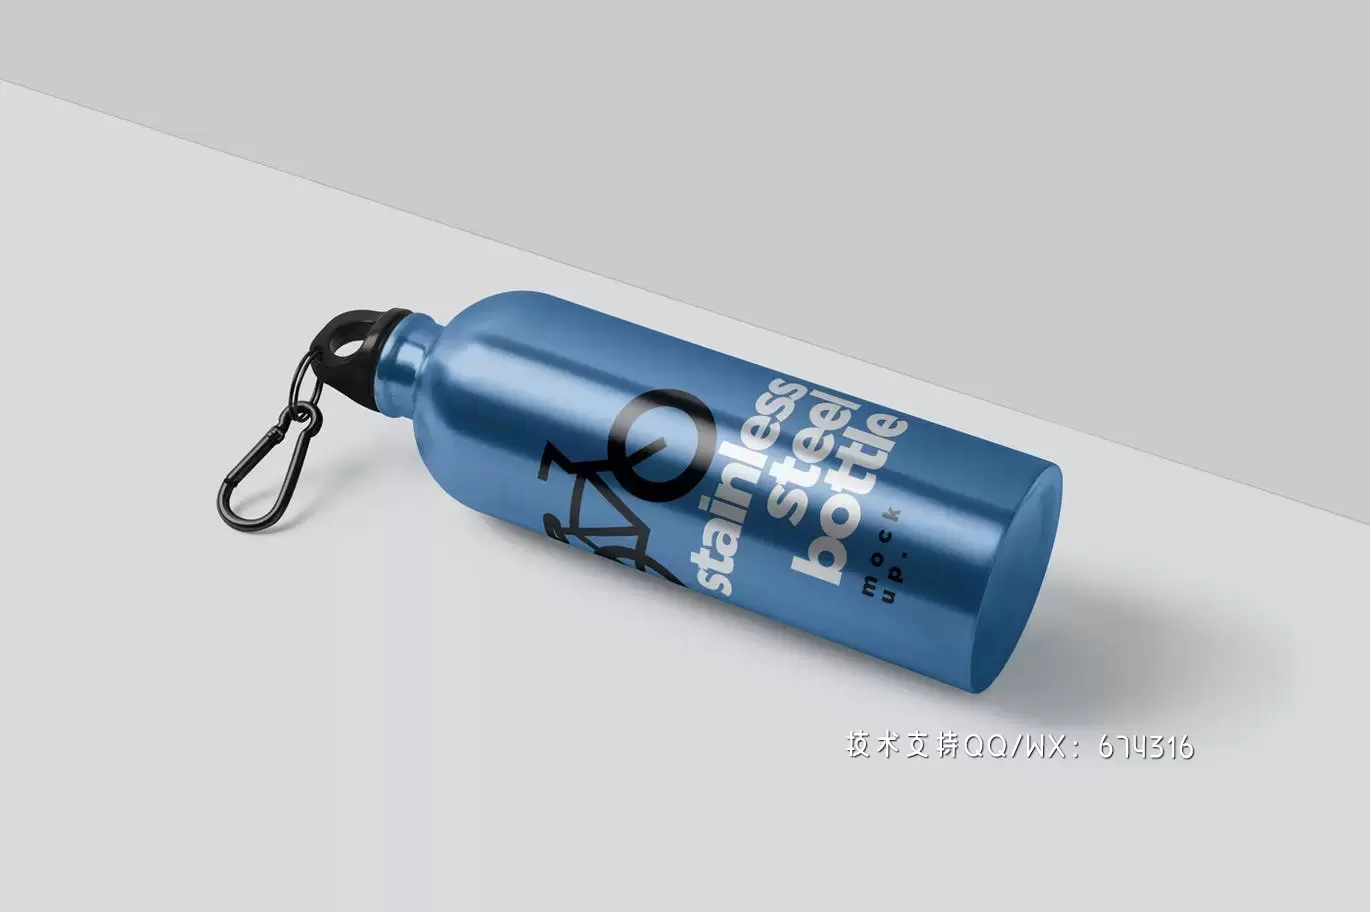 时尚高端高品质的热水瓶包装设计VI样机展示模型mockups免费下载插图4